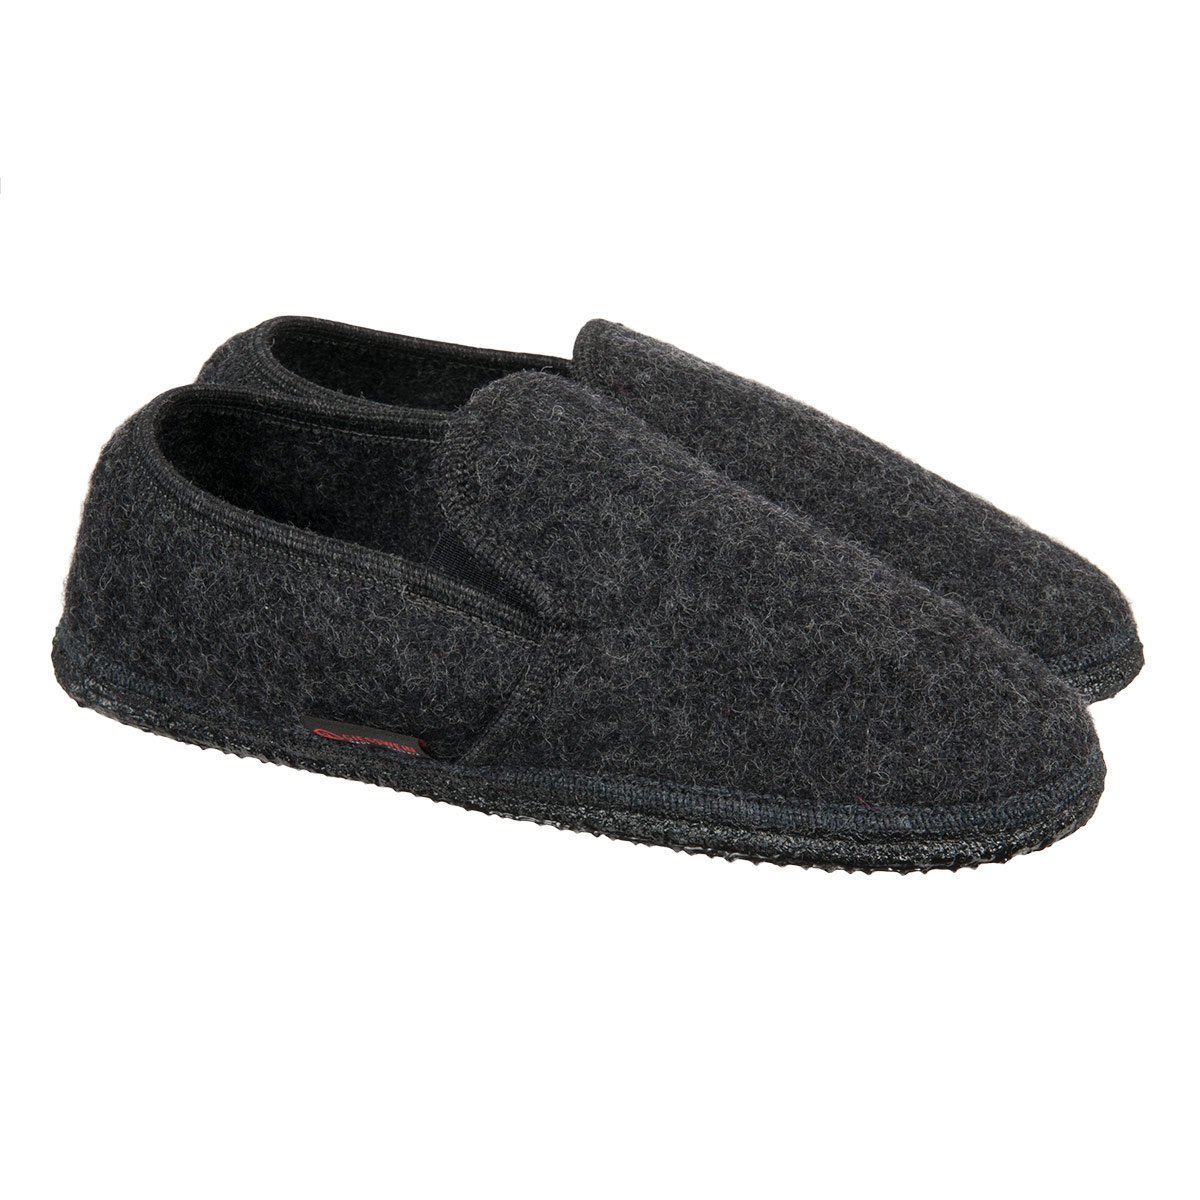 slip on wool slippers